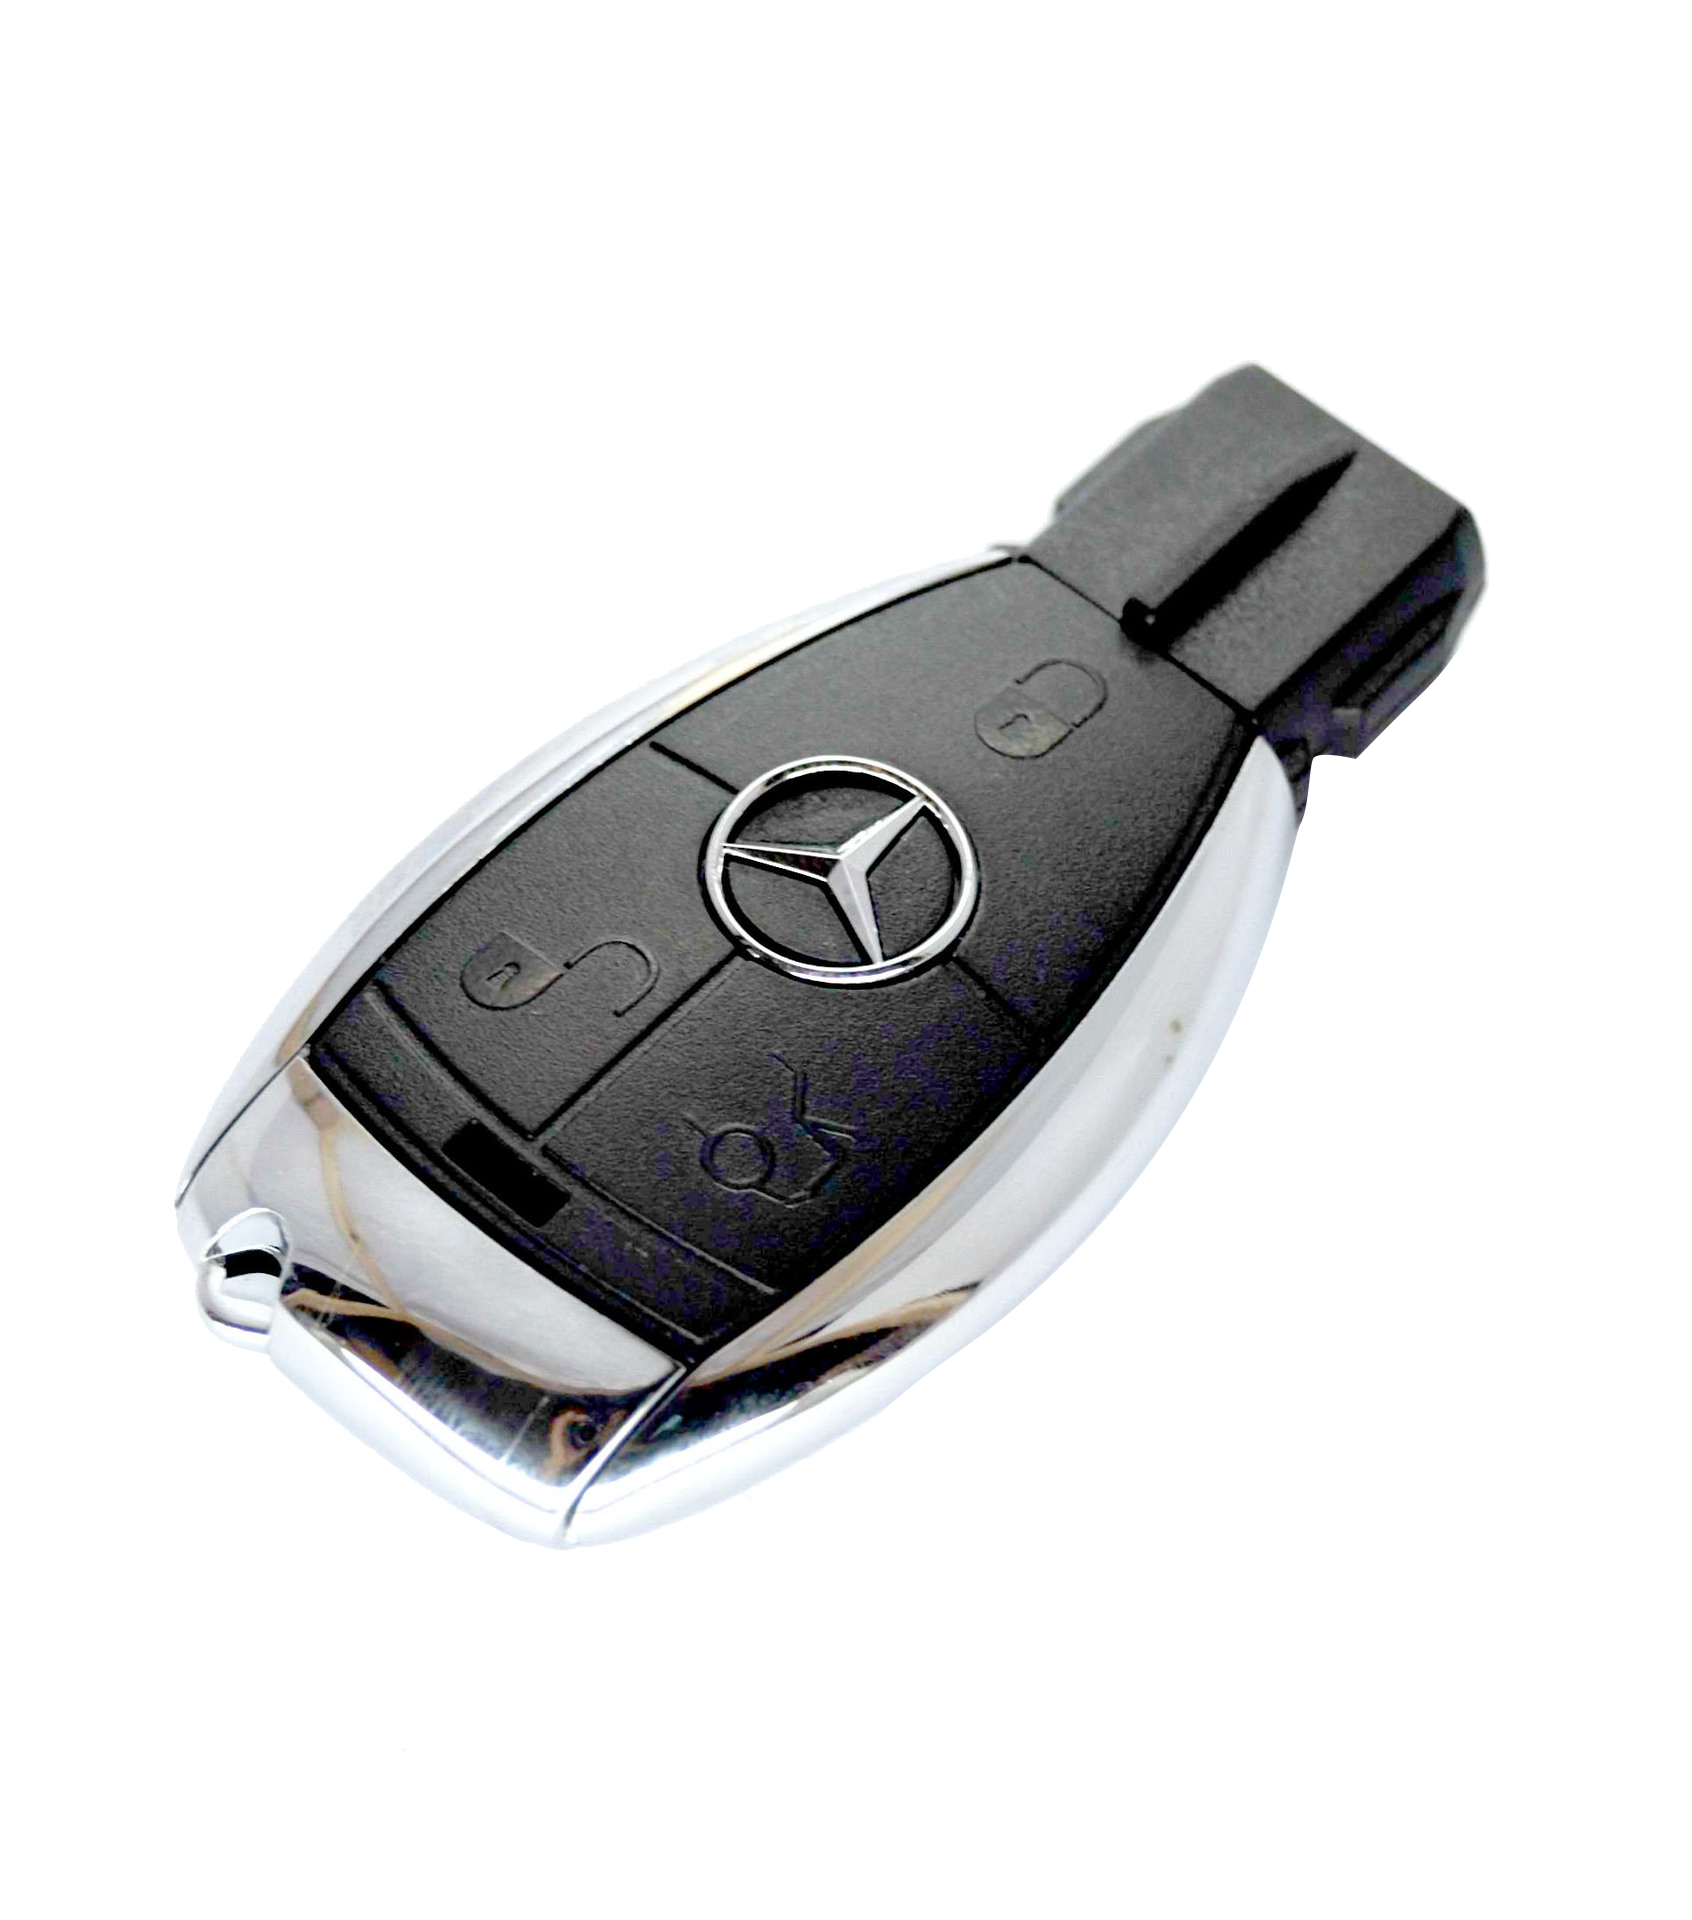 Ключи вид машин. Mercedes Benz ключ. Корпус ключа рыбка Mercedes хром Тип 2. Ключи от машина Мерседес бенз. Mercedes 2023 Key.